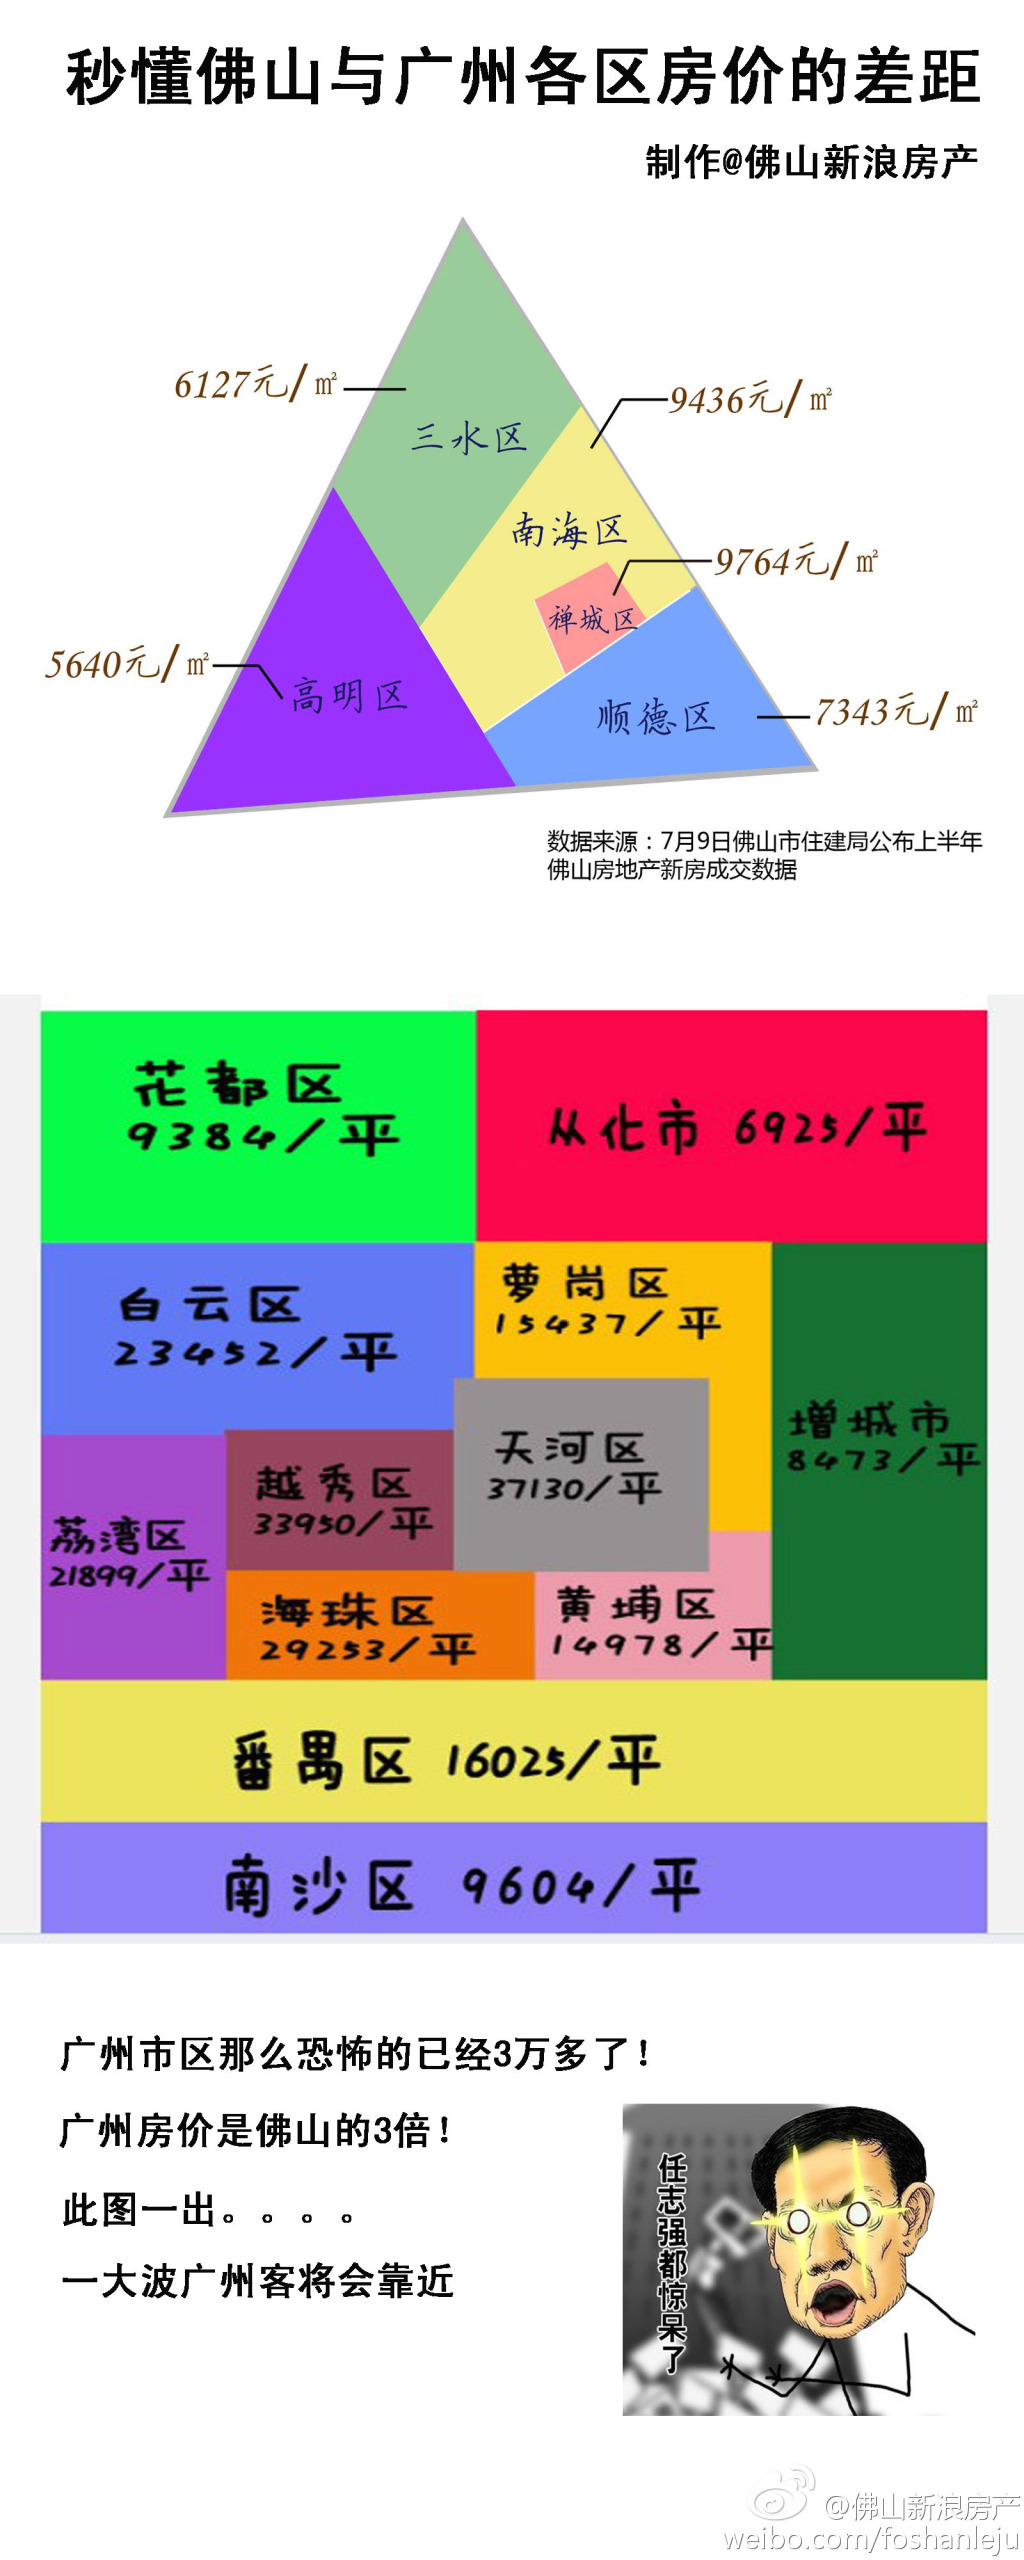 【图】佛山与广州各区之间的楼价差距!